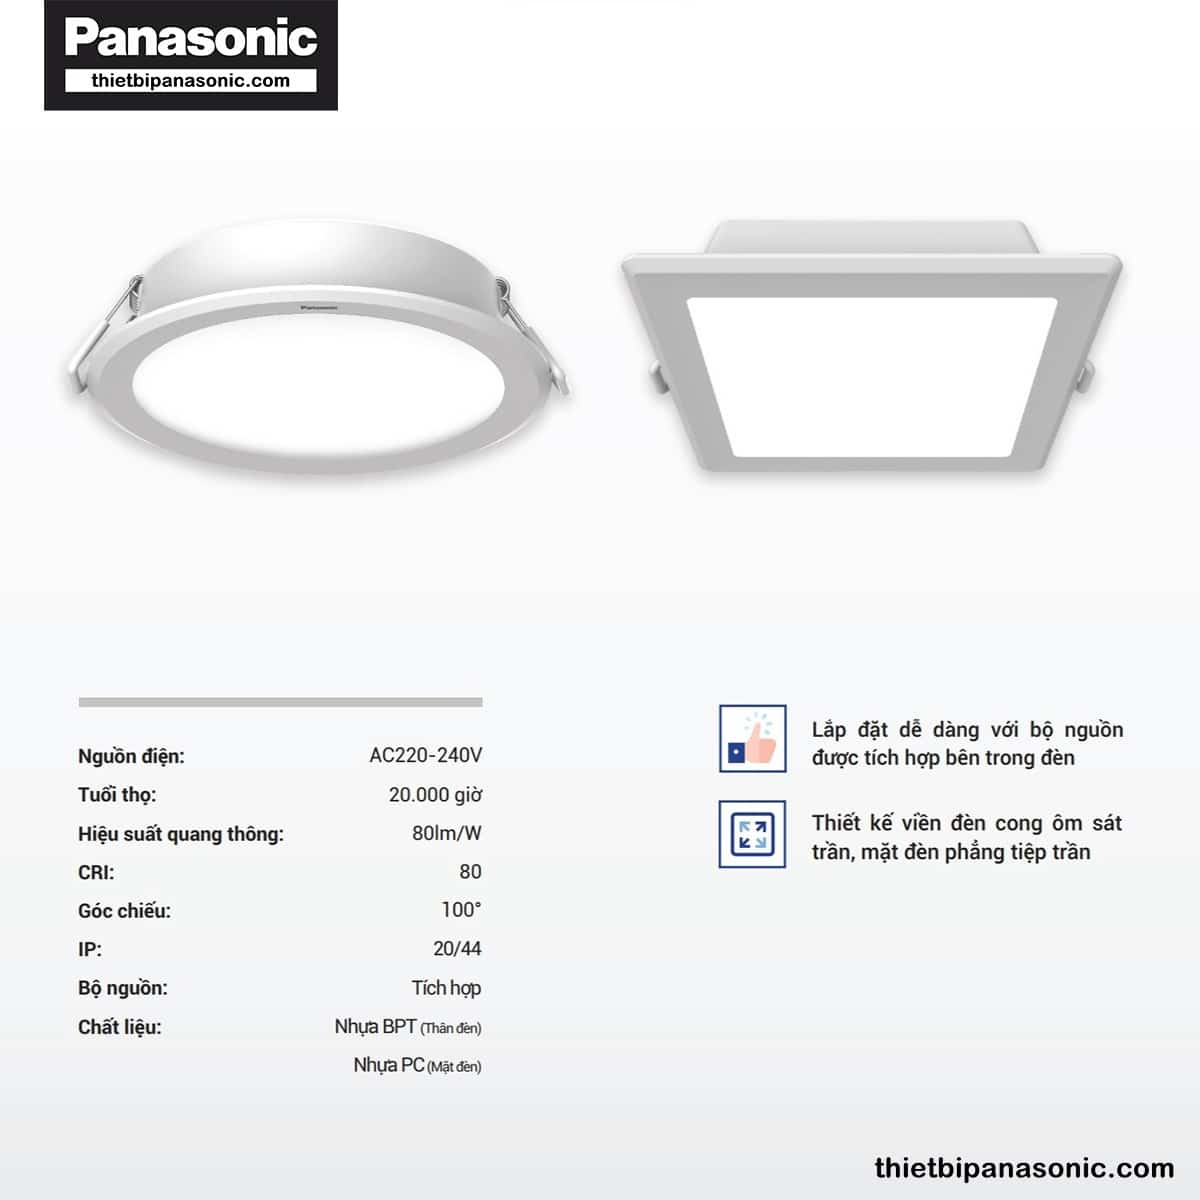 Đặc điểm nổi bật của Đèn LED âm trần DN 2G Panasonic 9W đơn sắc tròn | lỗ khoét Ø90mm, Ø110mm